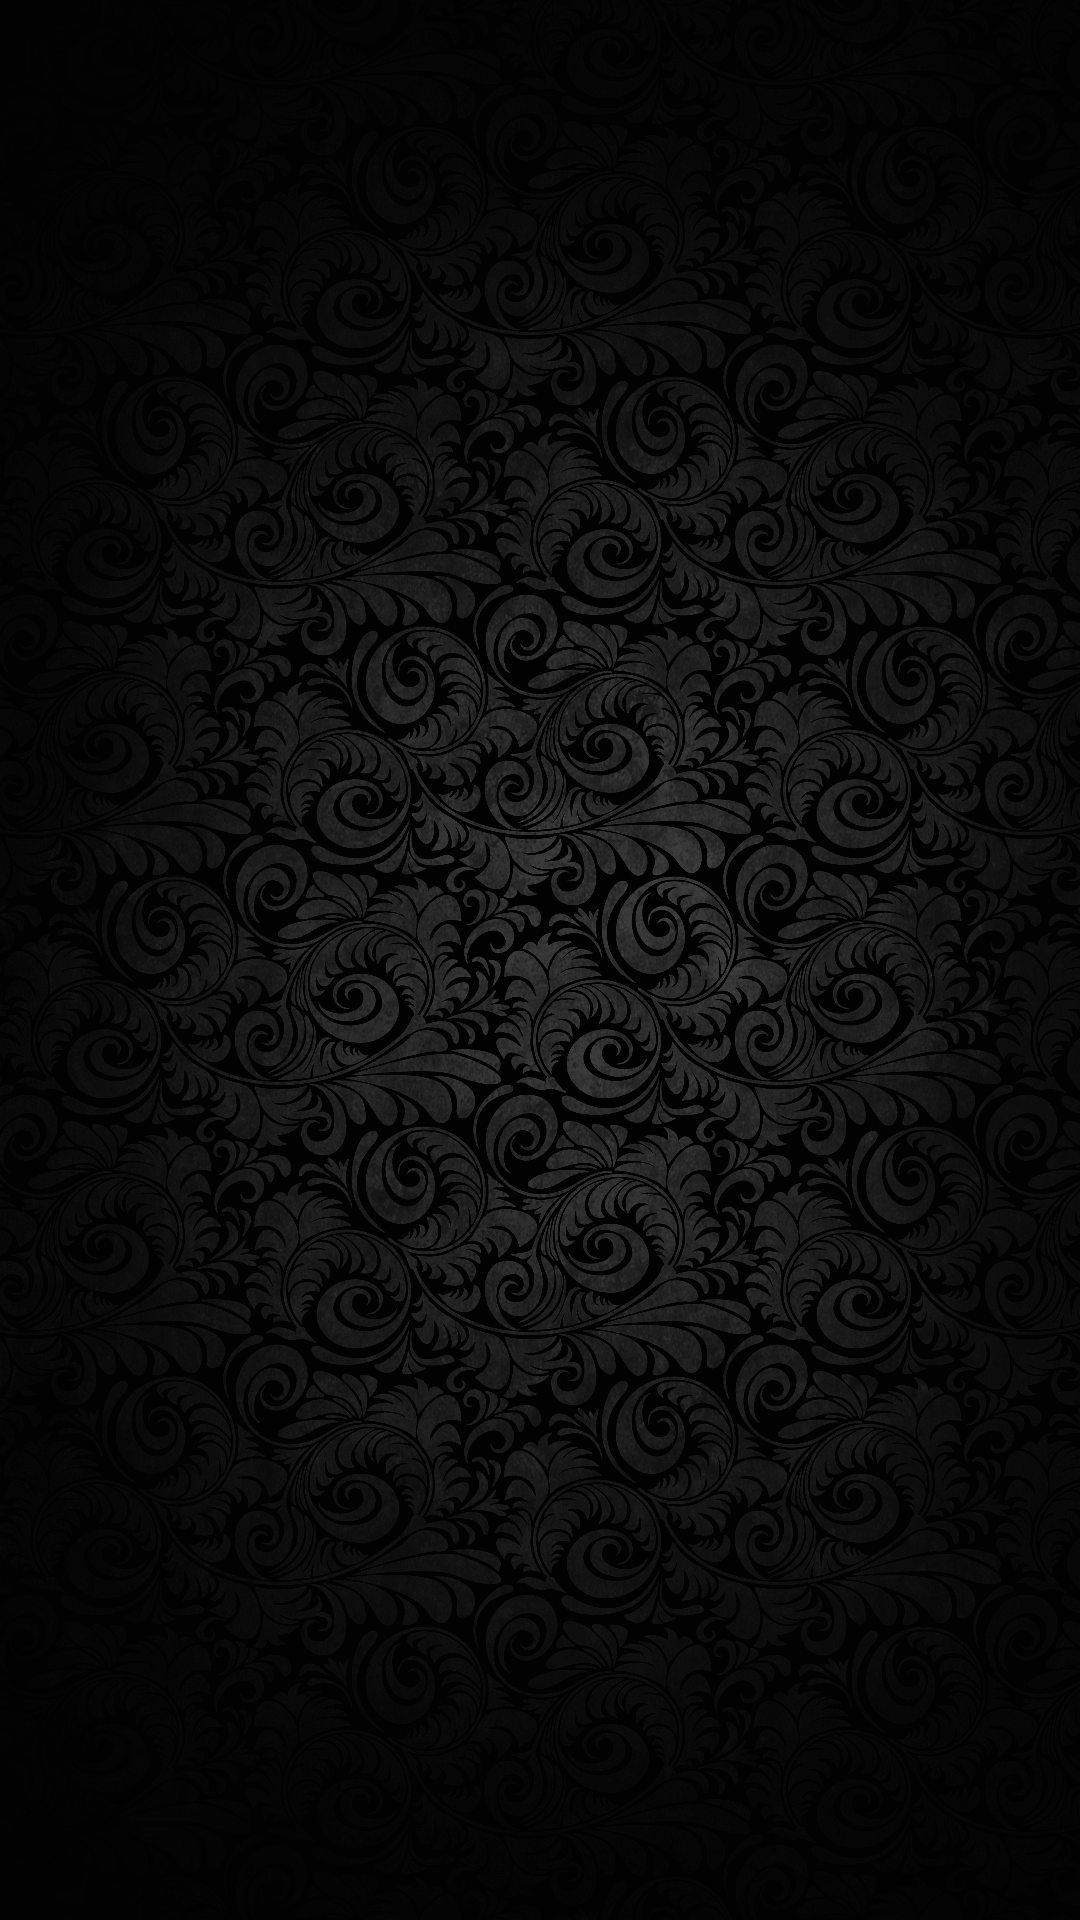 1080x1920 Wallpaper full hd 1080 x 1920 smartphone dark elegant